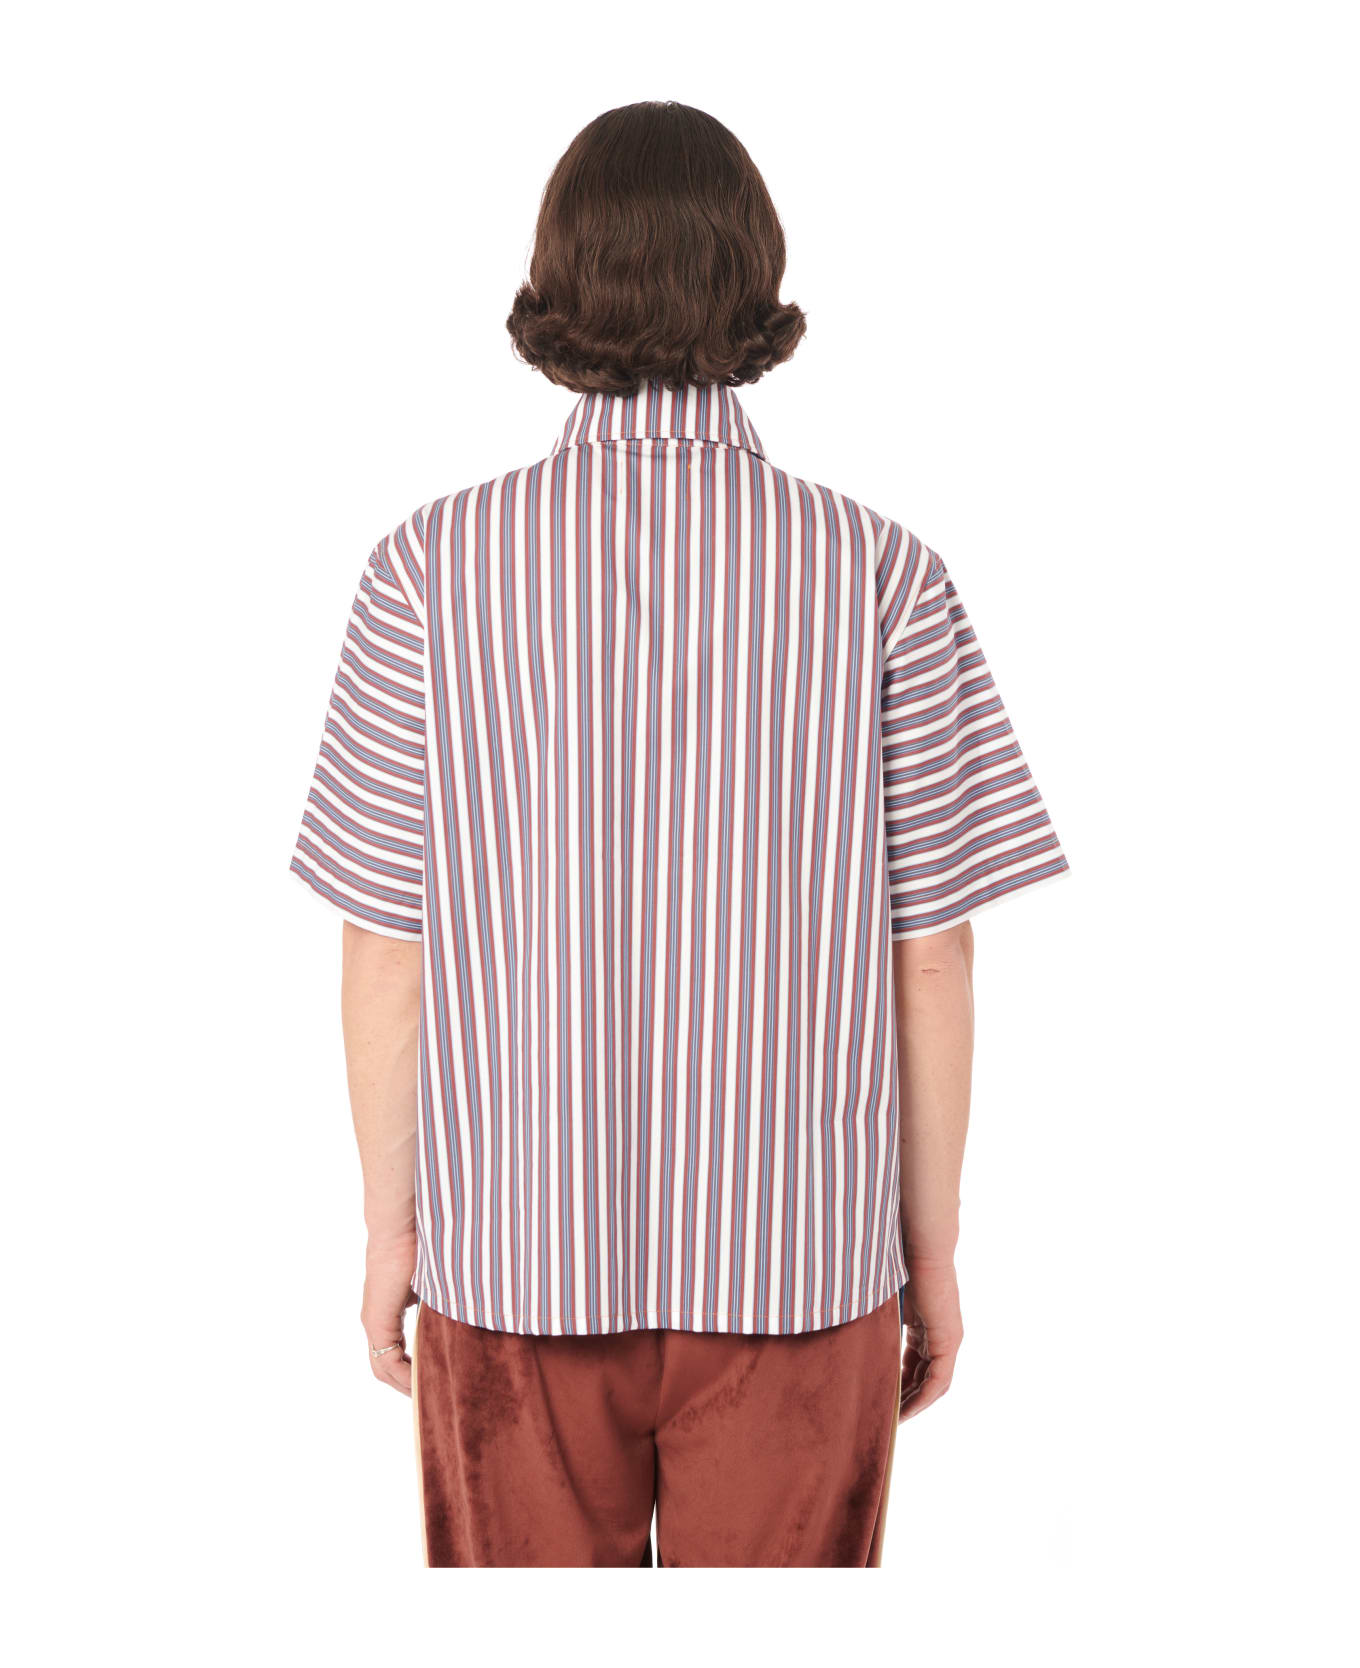 PACCBET Kyler Striped Shirt Woven - Print